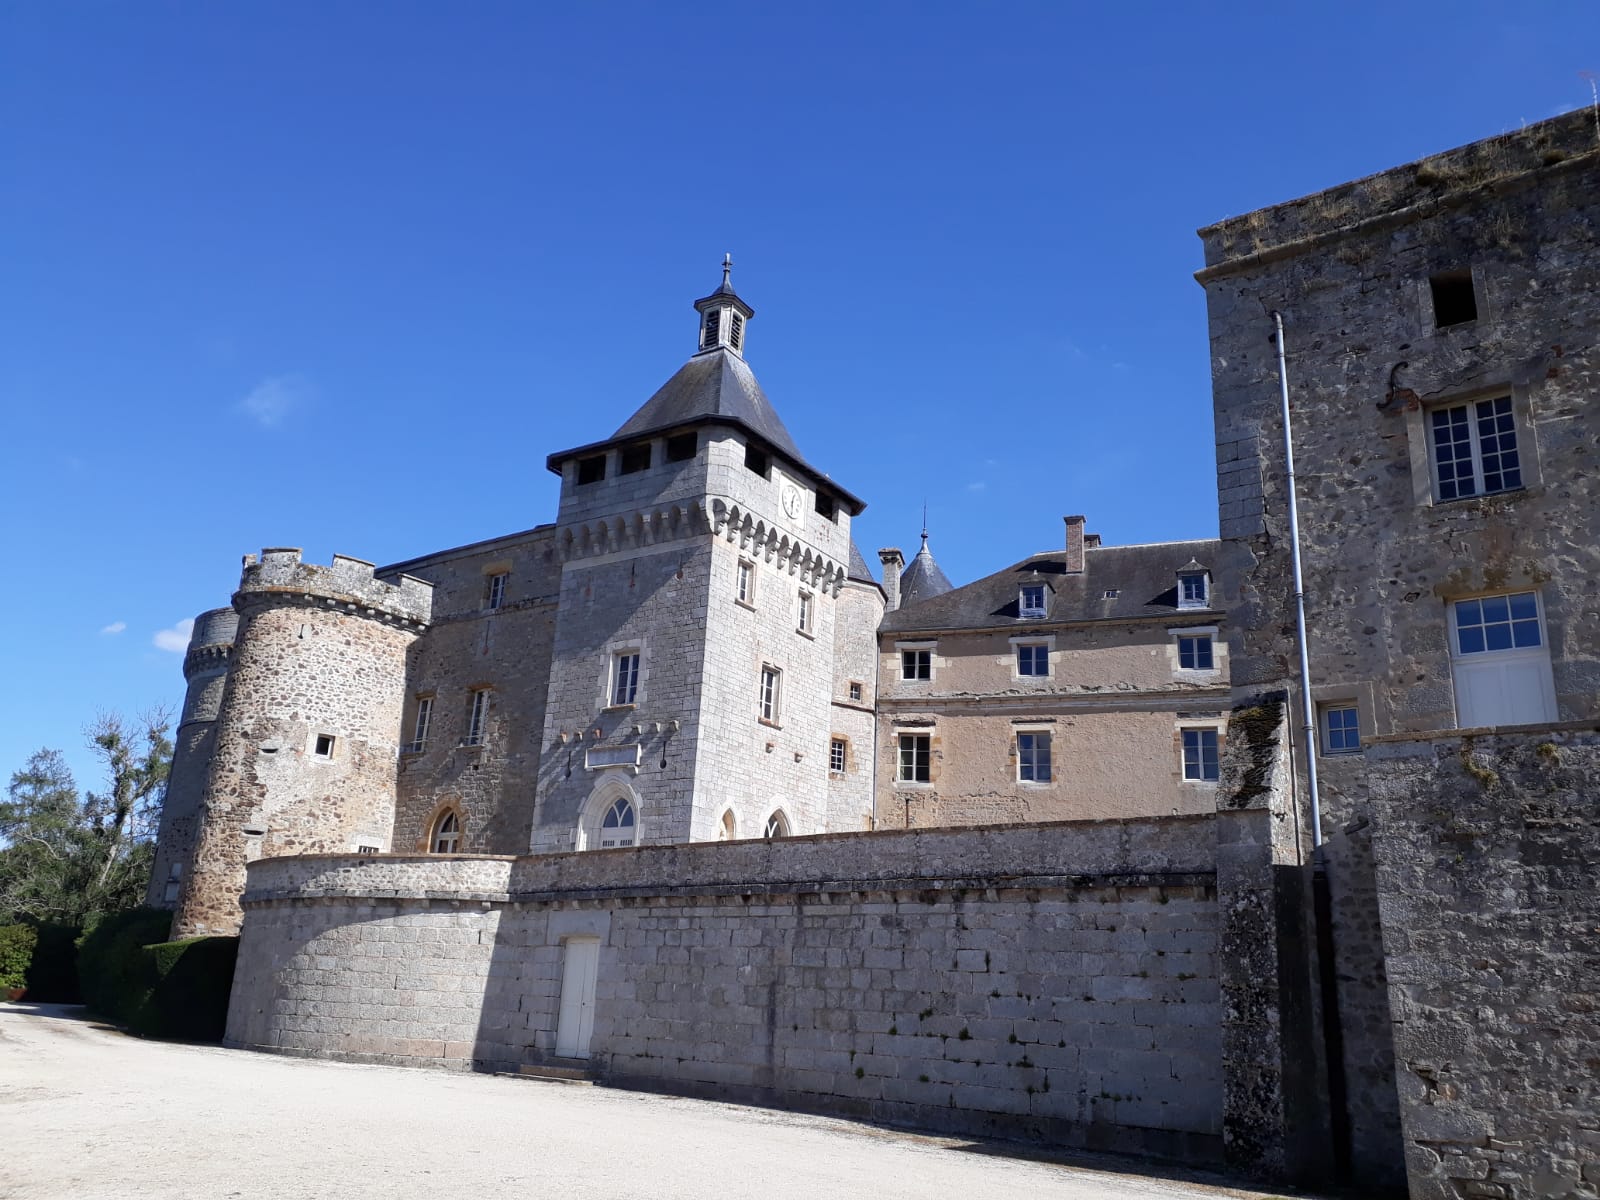 Chateau de Chastellux